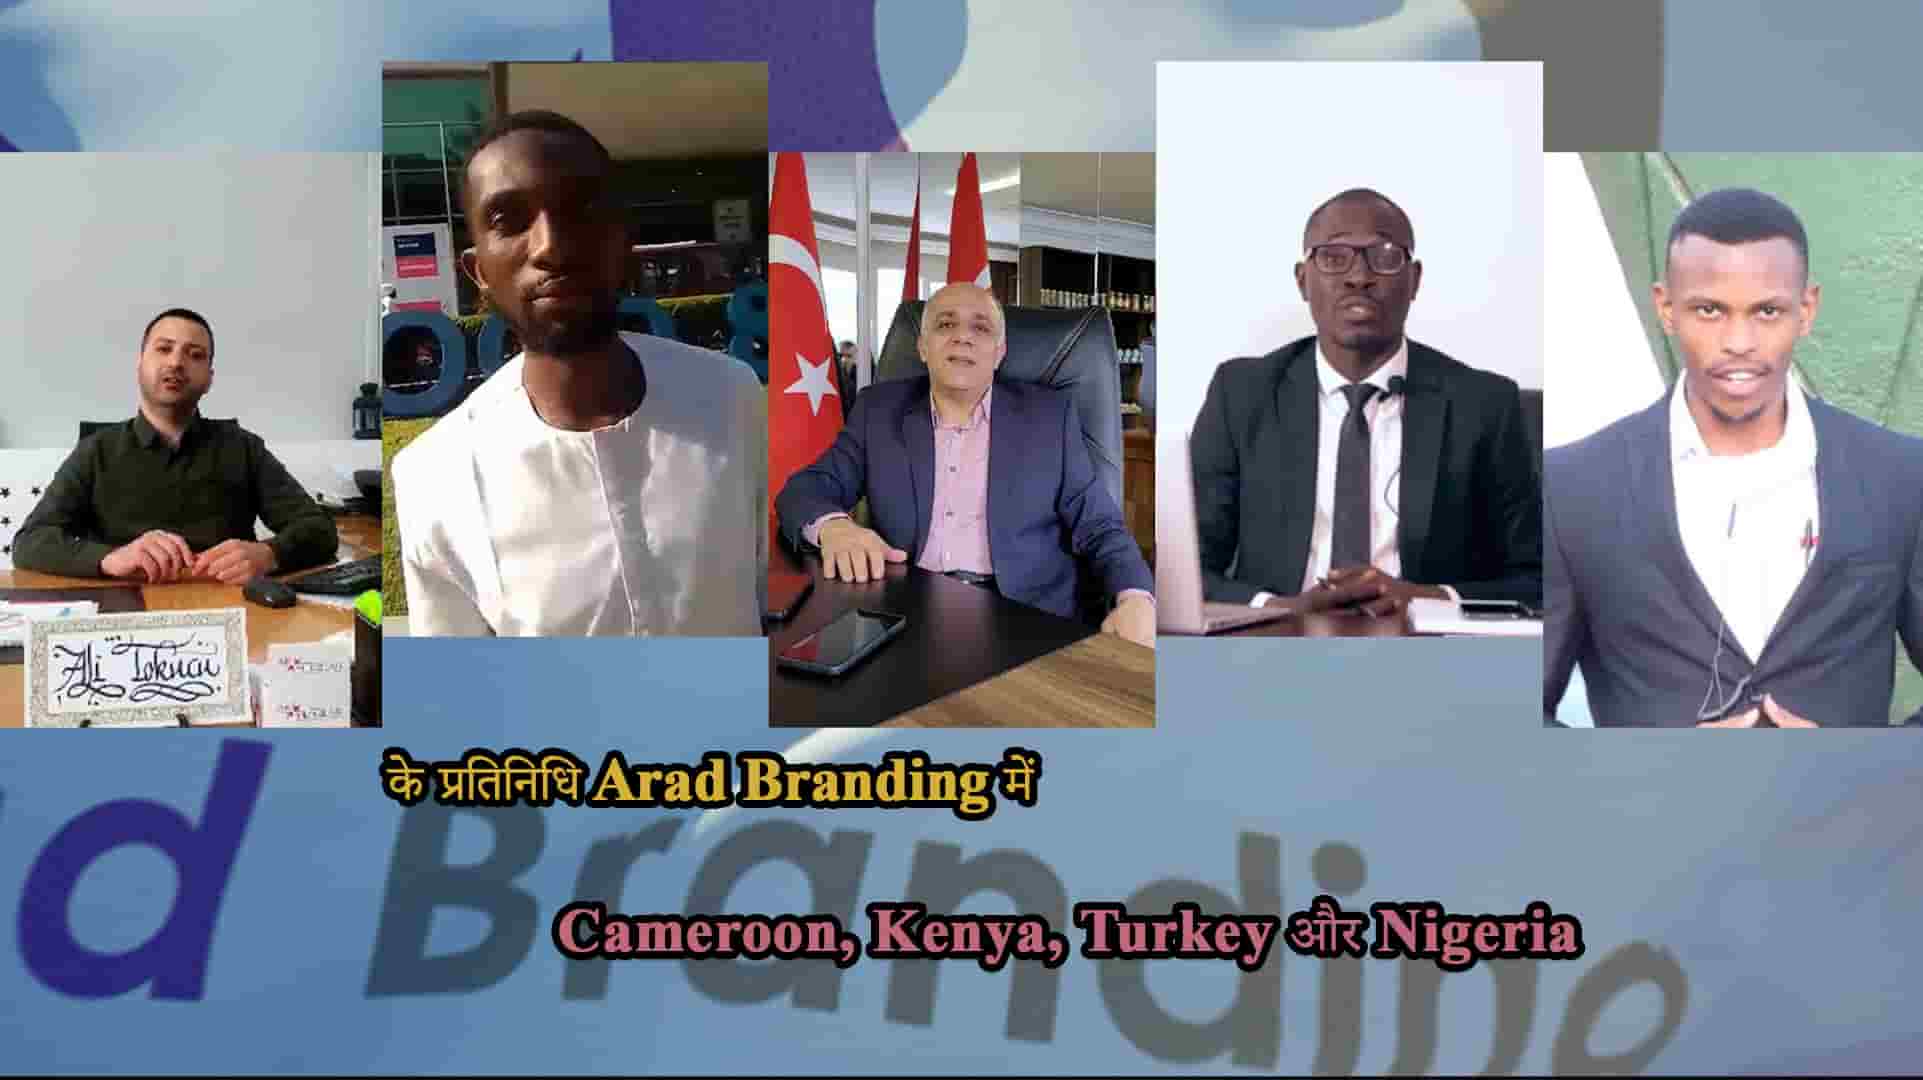 Cameroon में Arad Branding कार्यालय का उद्घाटन + Turkey कार्यालय गतिविधियाँ + Nigeria, Turkey और Kenya में नए प्रतिनिधि + हम अपनी अंतिम सांस लेने तक खड़े हैं।